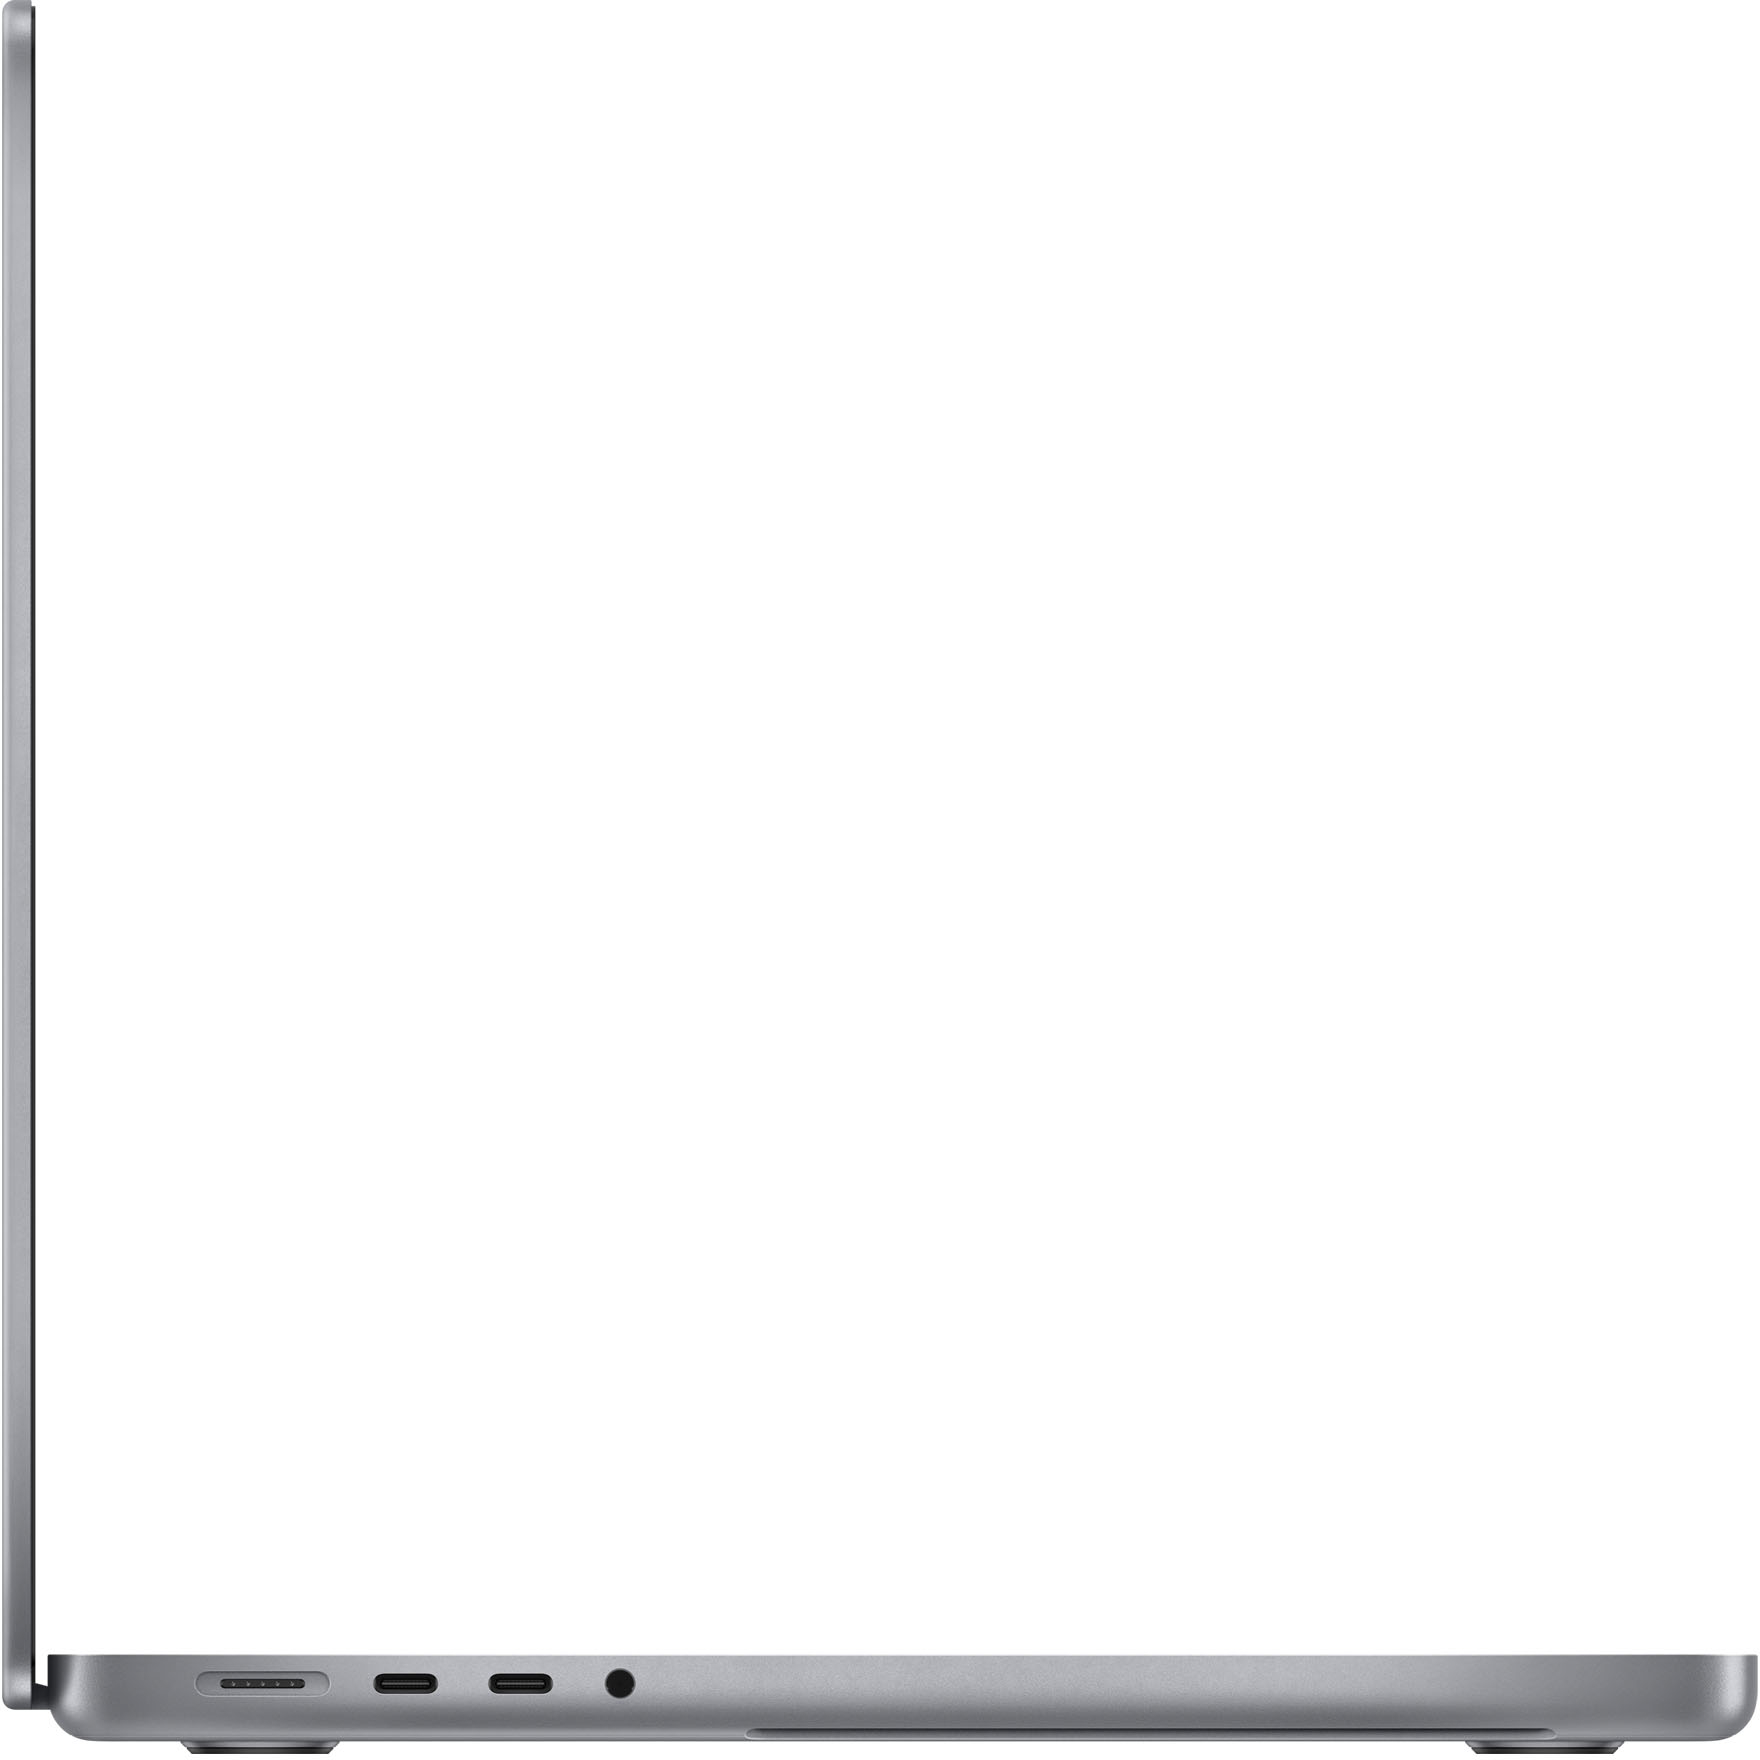 Best Buy: MacBook Pro 14